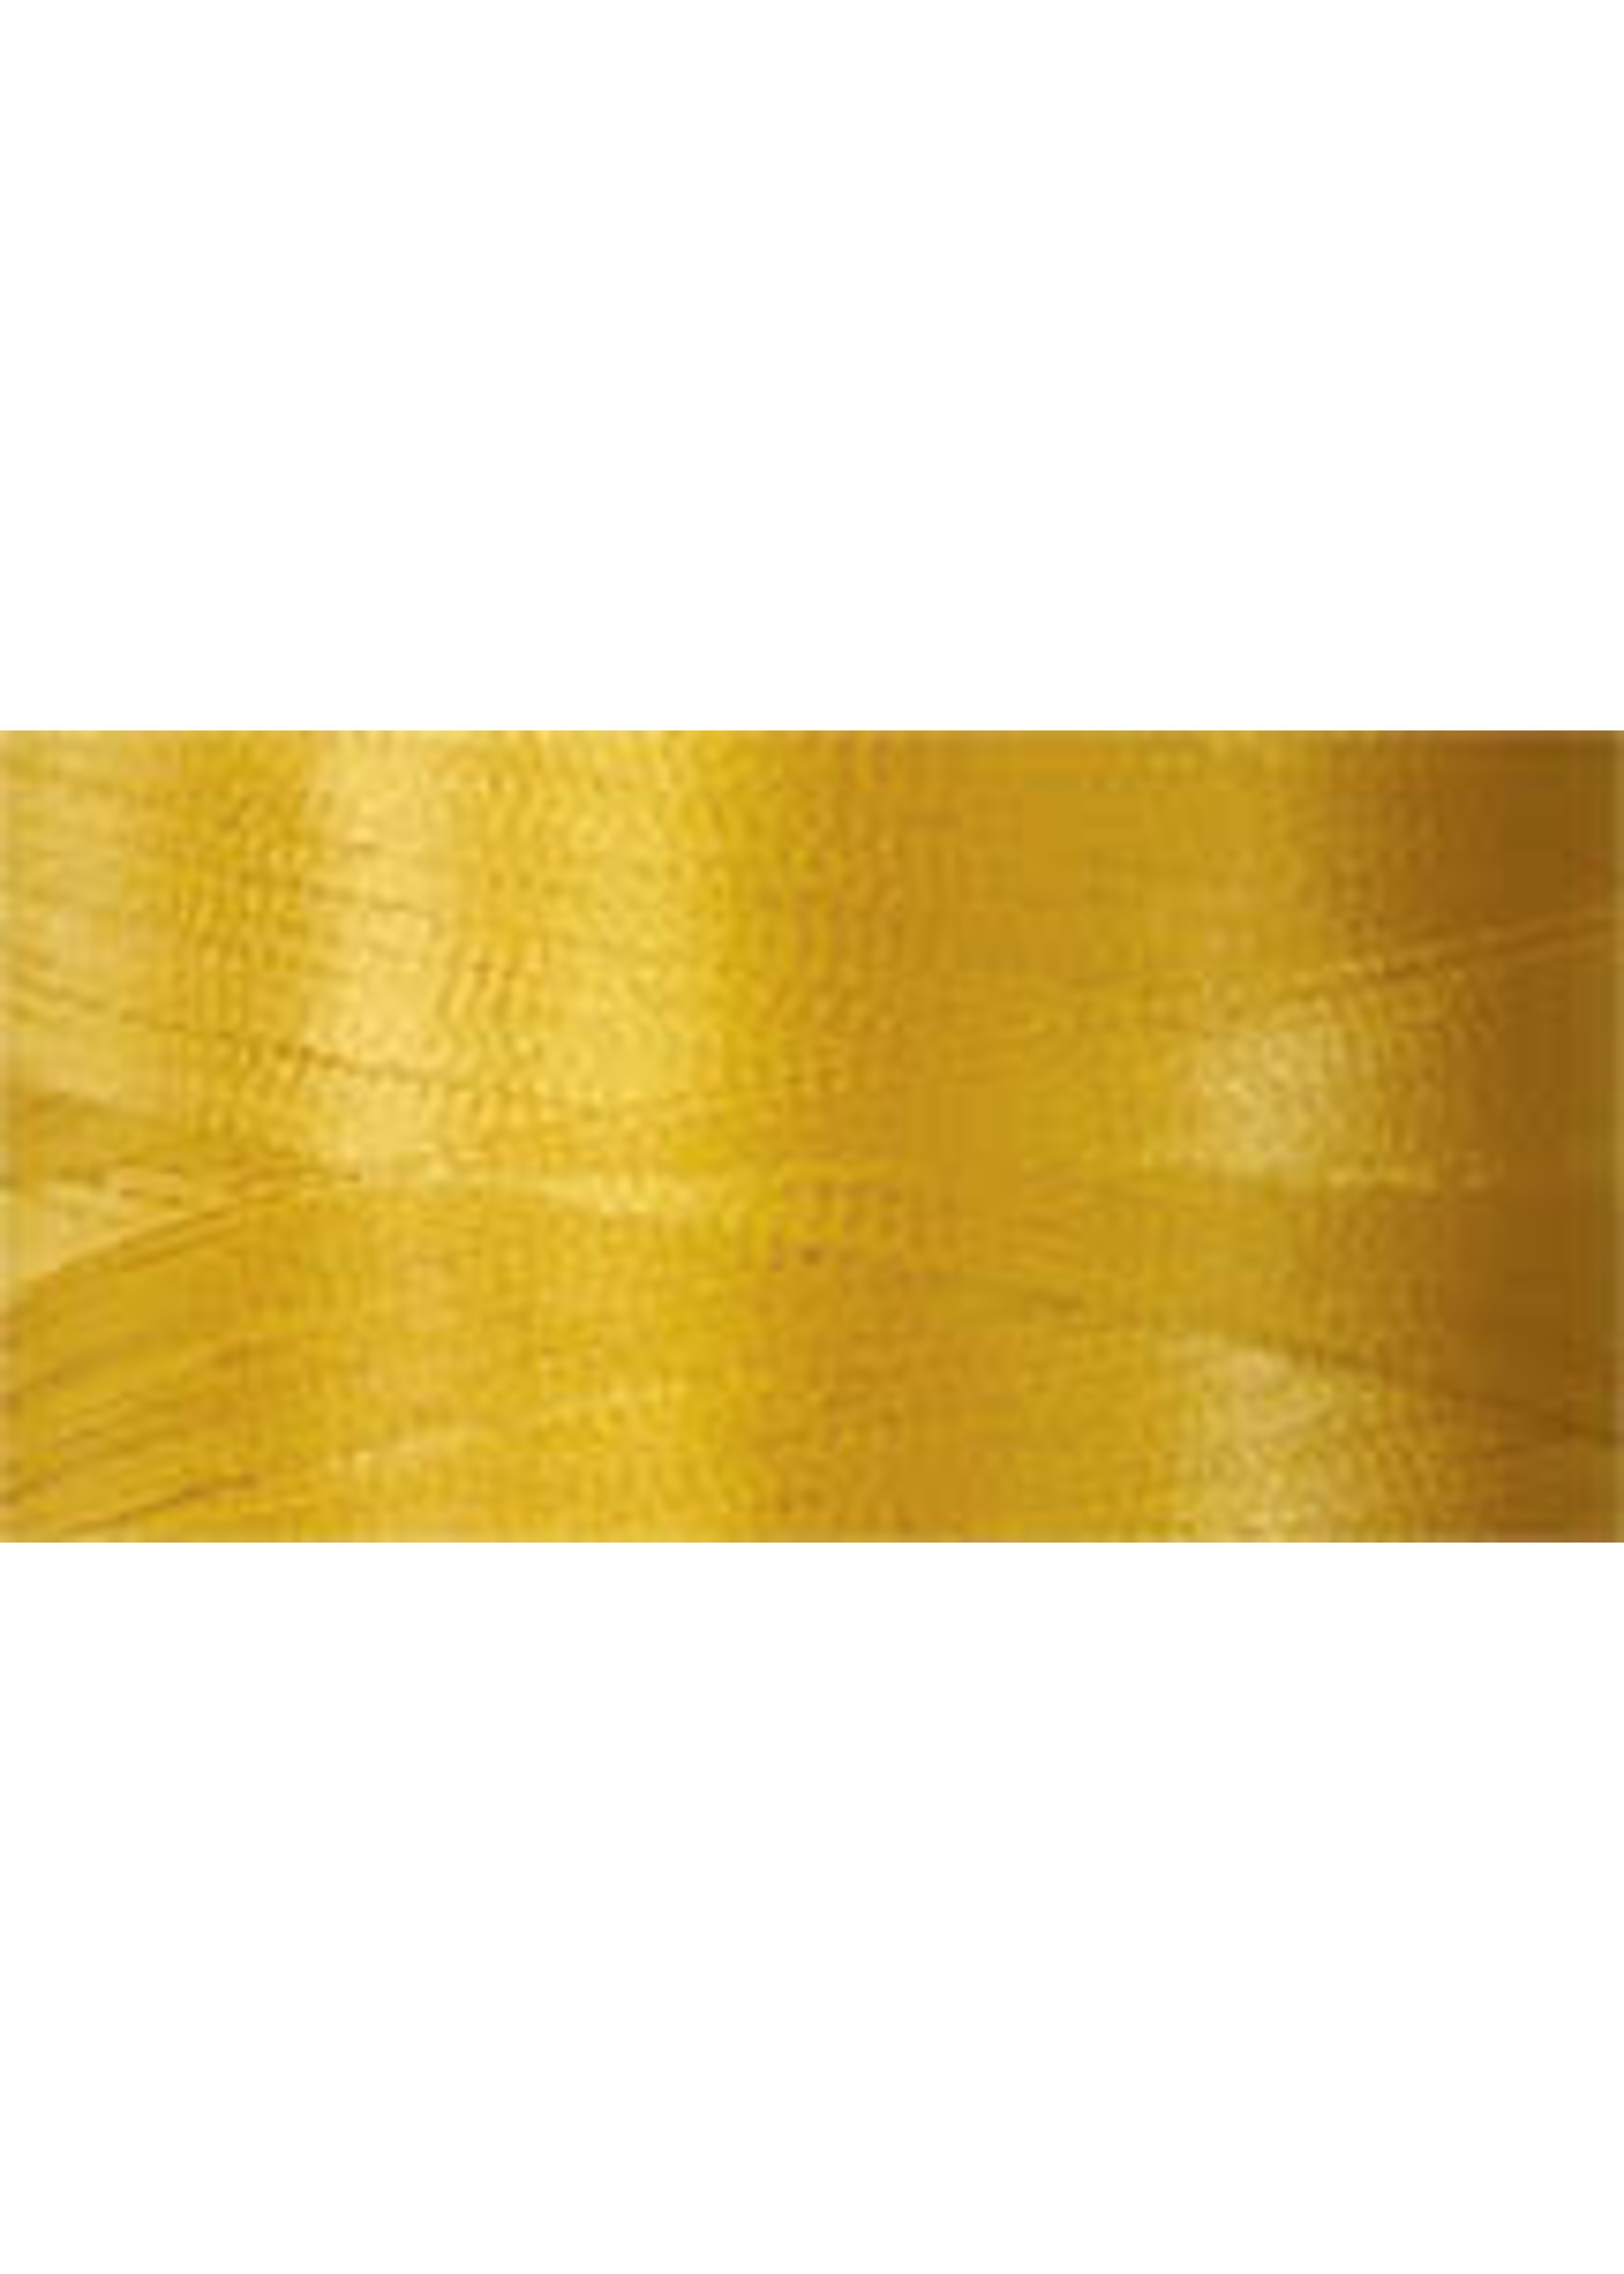 Superior Threads Bottom Line - #60 - 1300 m - 602 Gold